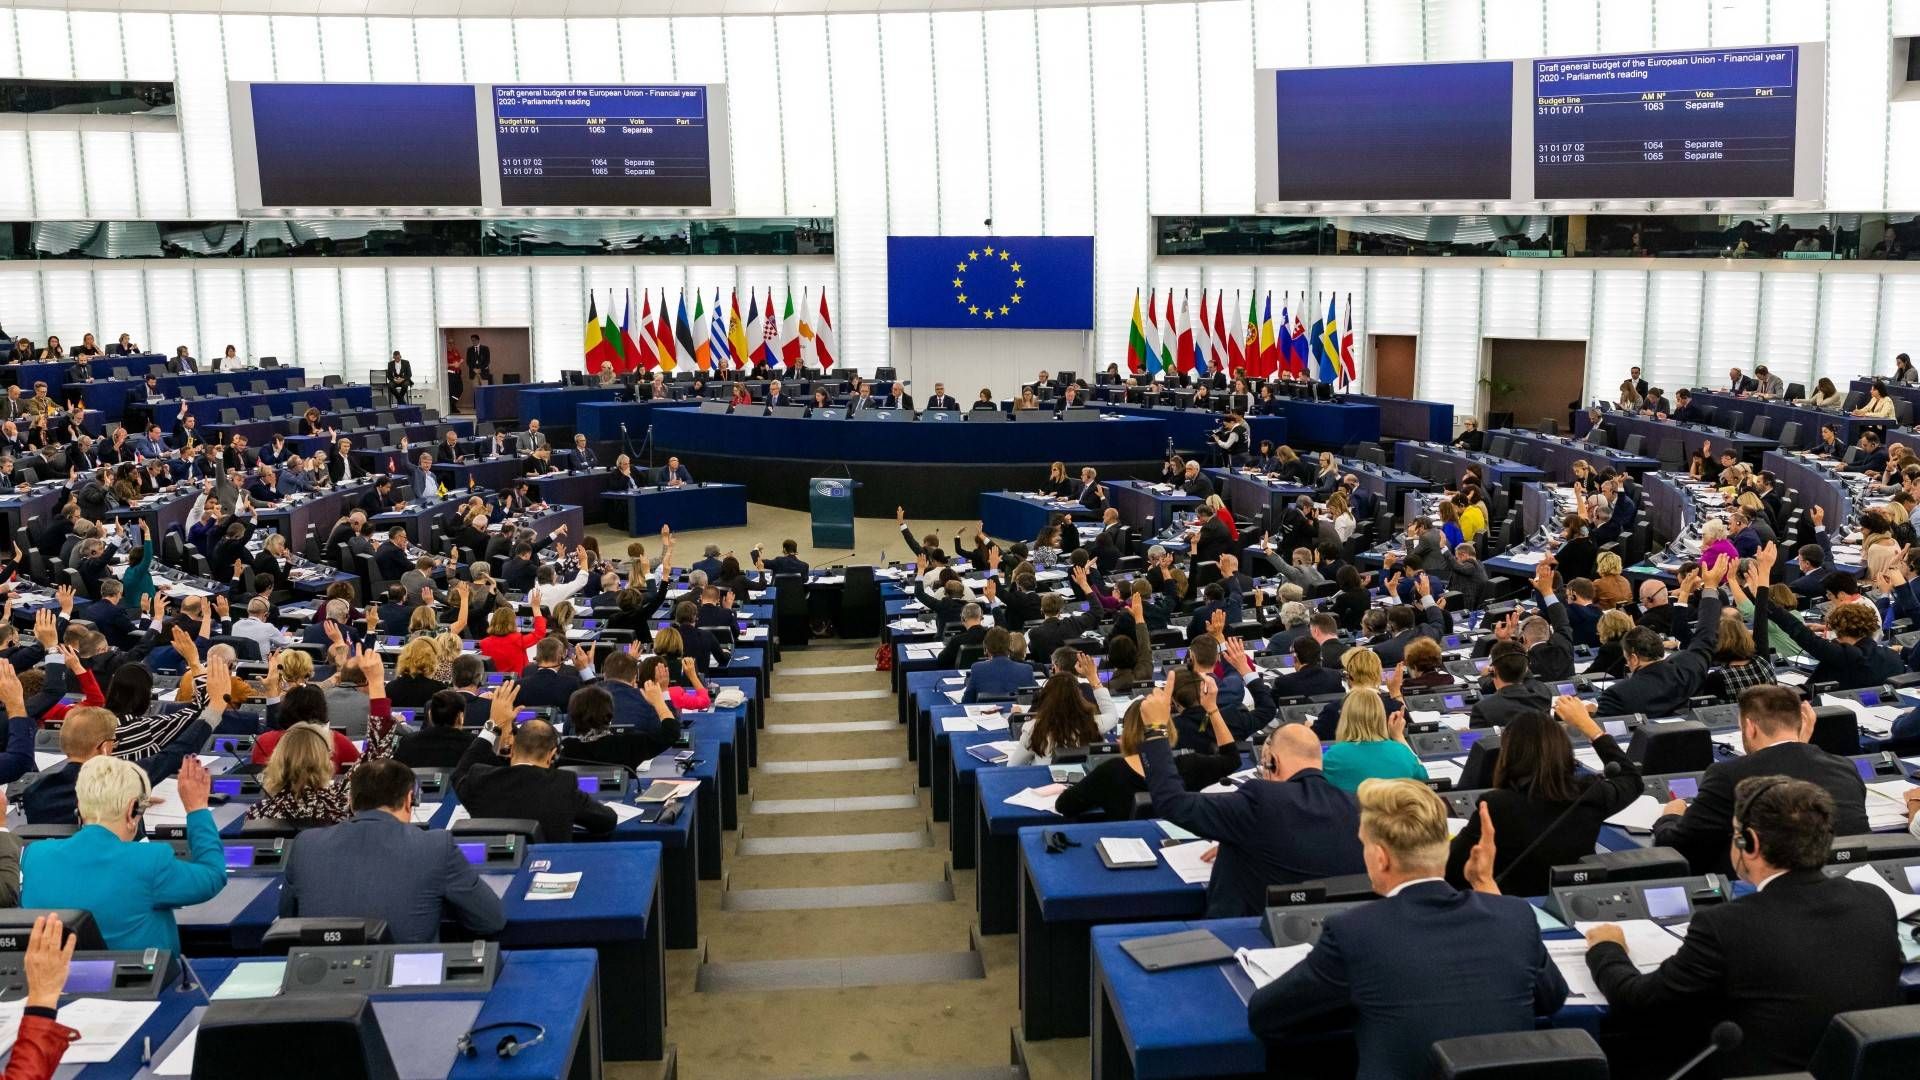 Das Europaparlament bei einer Tagung in Brüssel. | Foto: picture alliance/Philipp von Ditfurth/dpa